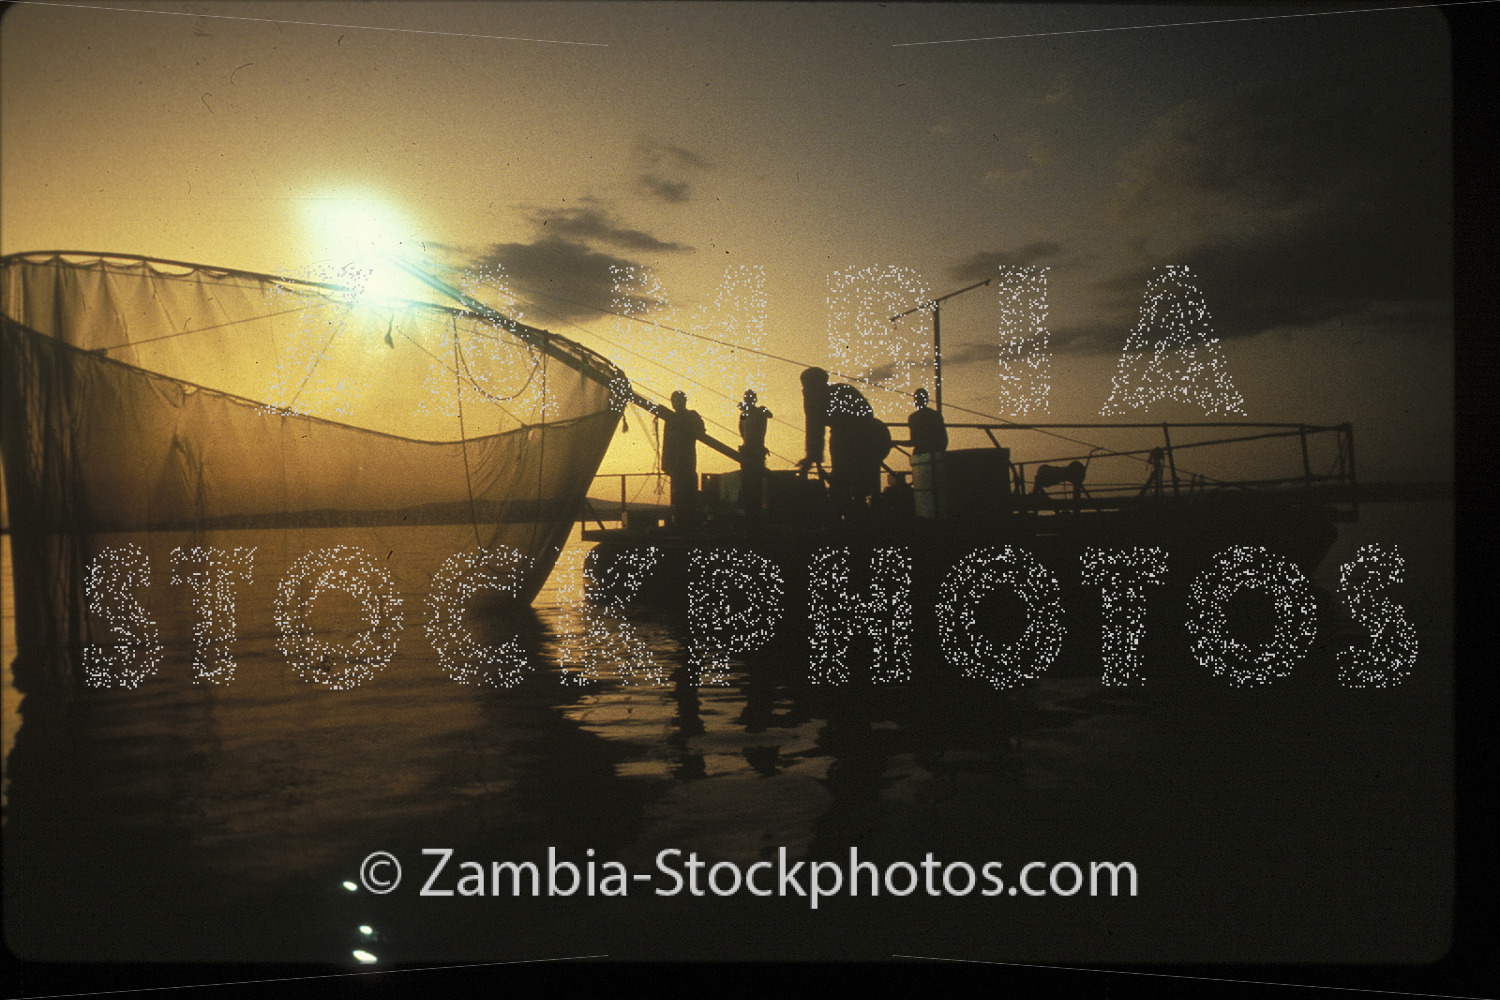 kapenta fishing.jpg - Zamstockphotos.com